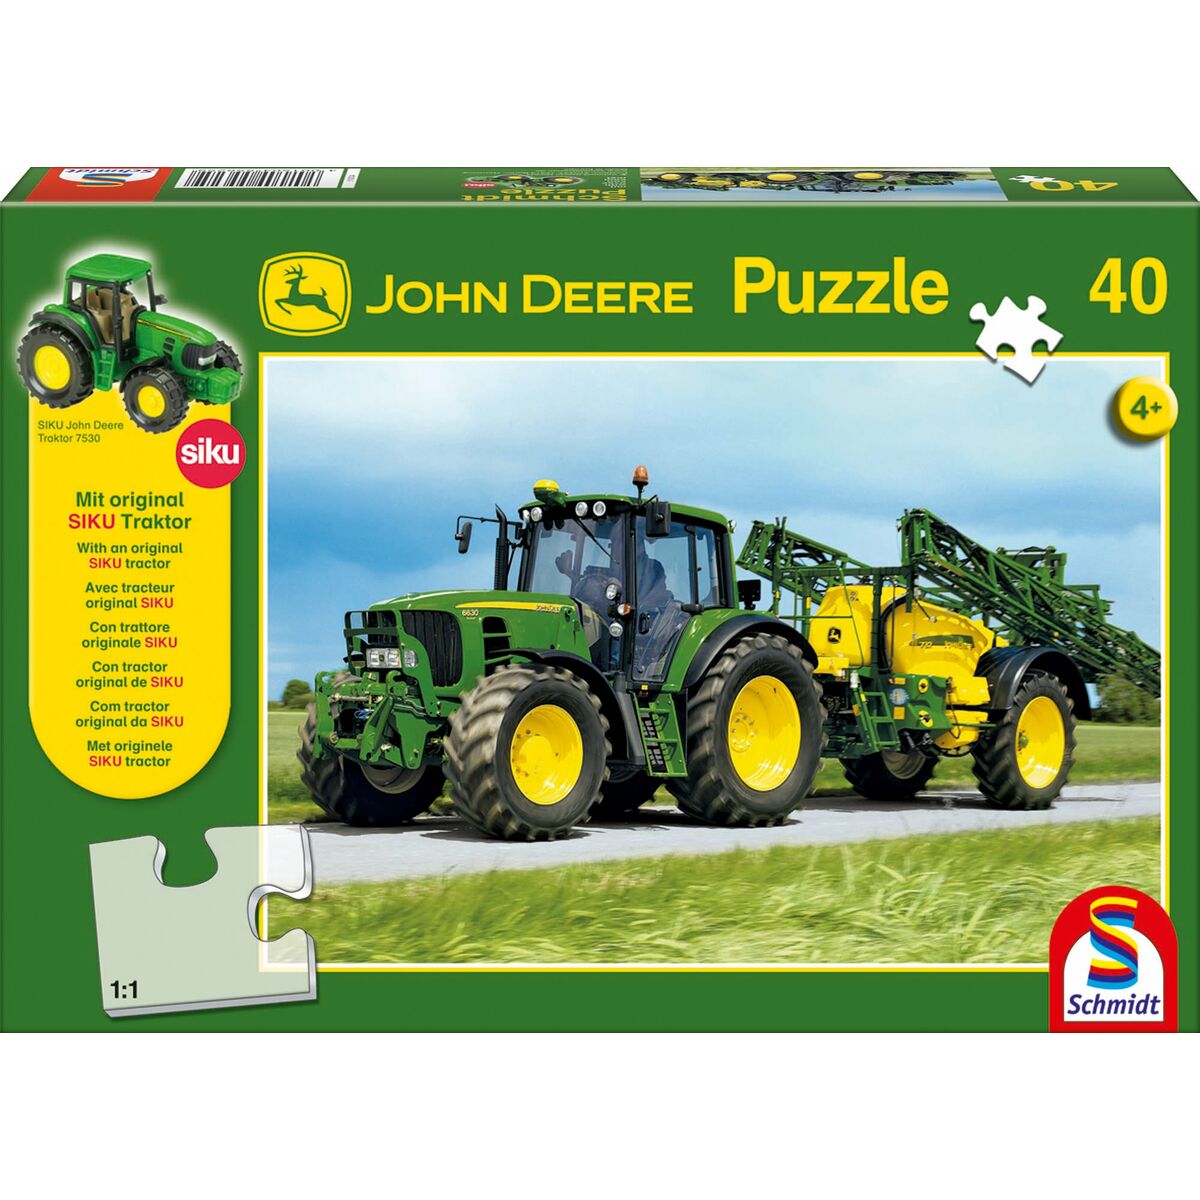 Puzzle Enfant Schmidt Spiele John Deere: Traktor 6630 mit Feldspritze Tracteur + 4 Ans 40 Pièces